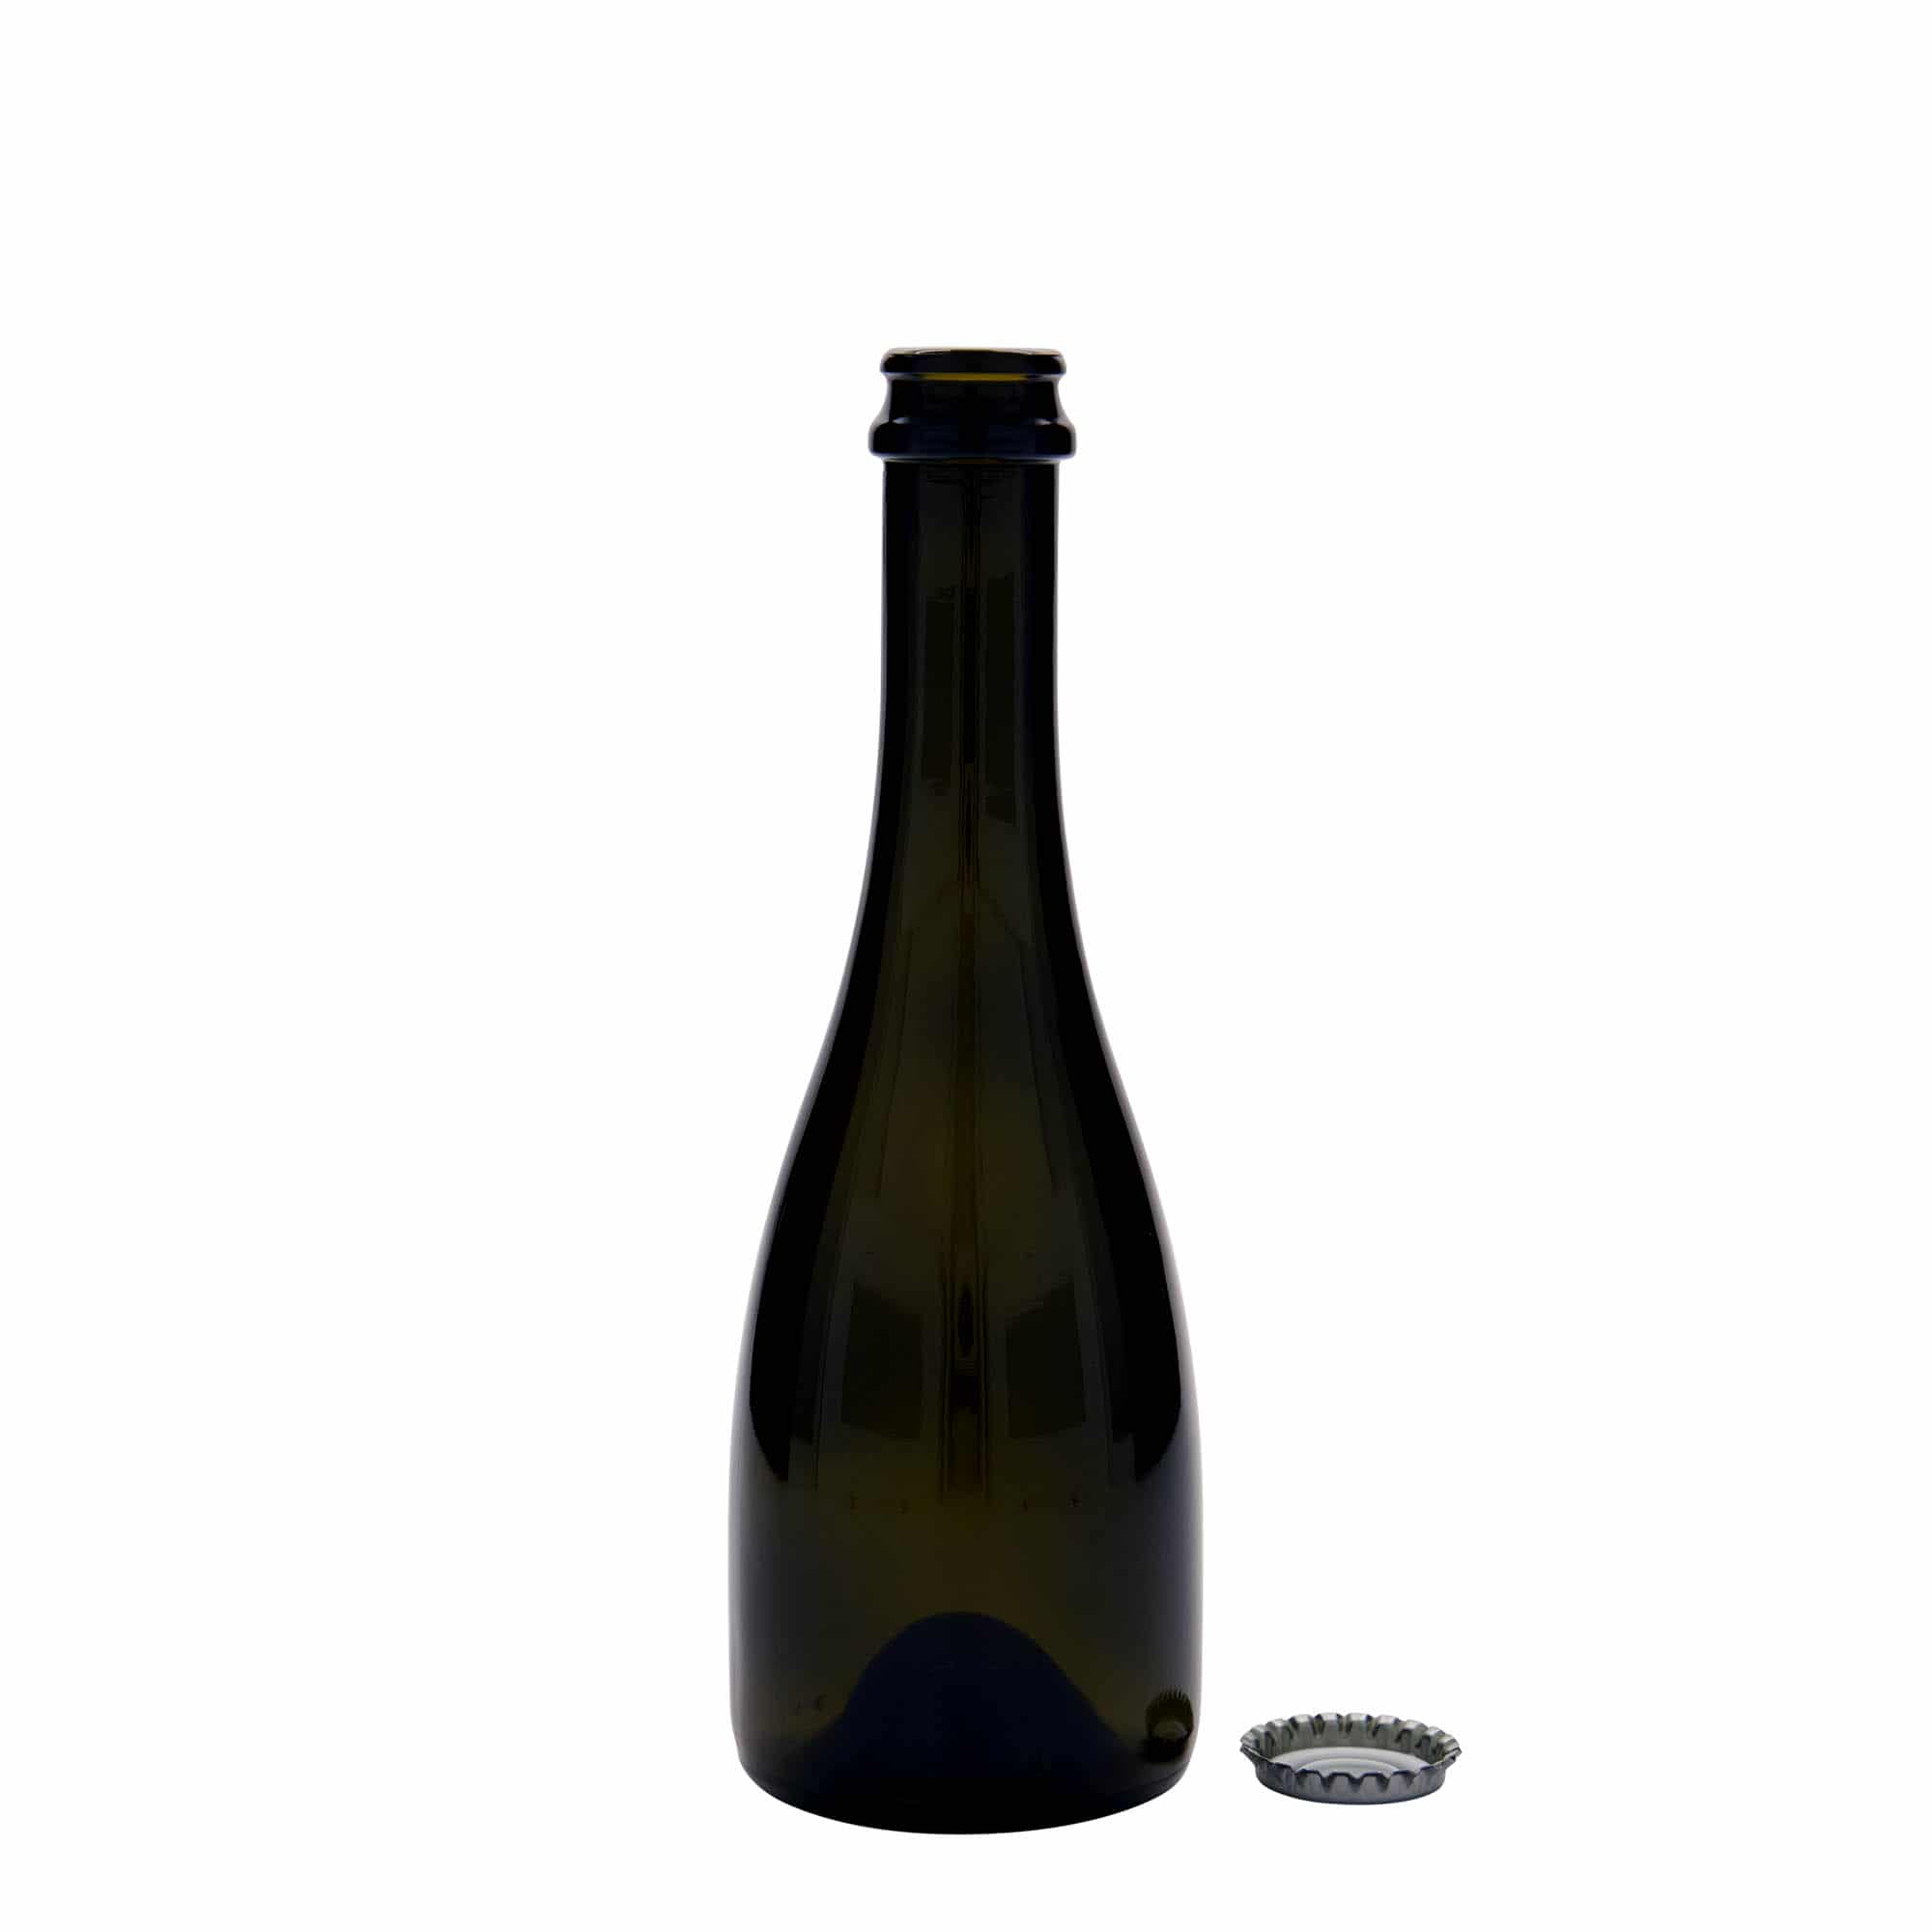 330 ml butelka do wina/szampana 'Tosca', szkło, kolor zielony antyczny, zamknięcie: kapsel